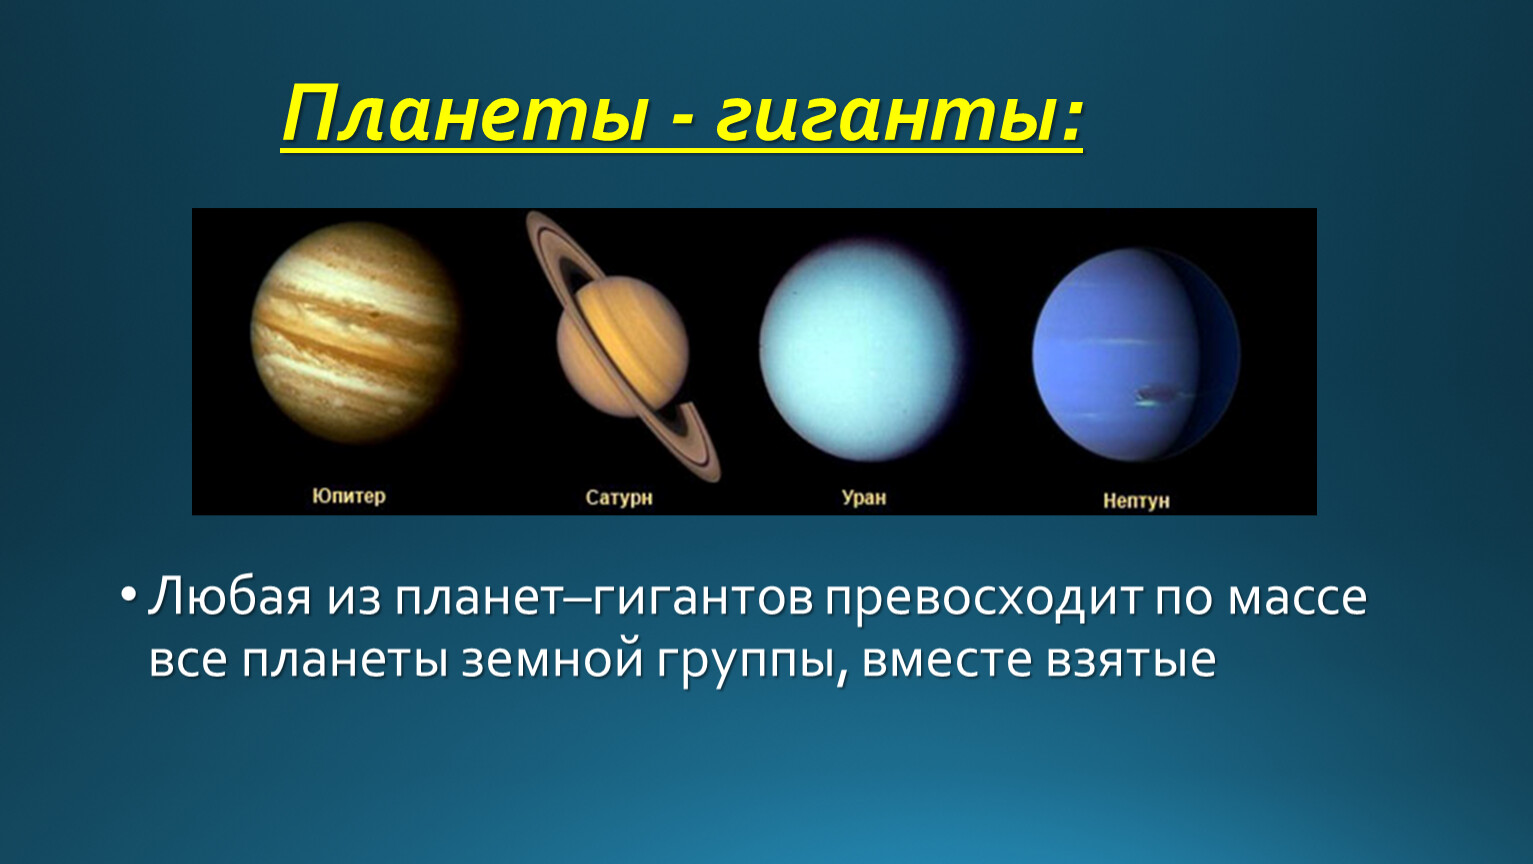 Различия между планетами. Планеты гигантпланеты земеой группы. Юпитер Сатурн Уран Нептун. Газовые гиганты Сатурн Уран Нептун Юпитер. Планеты солнечной системы планеты земной группы планеты гиганты.